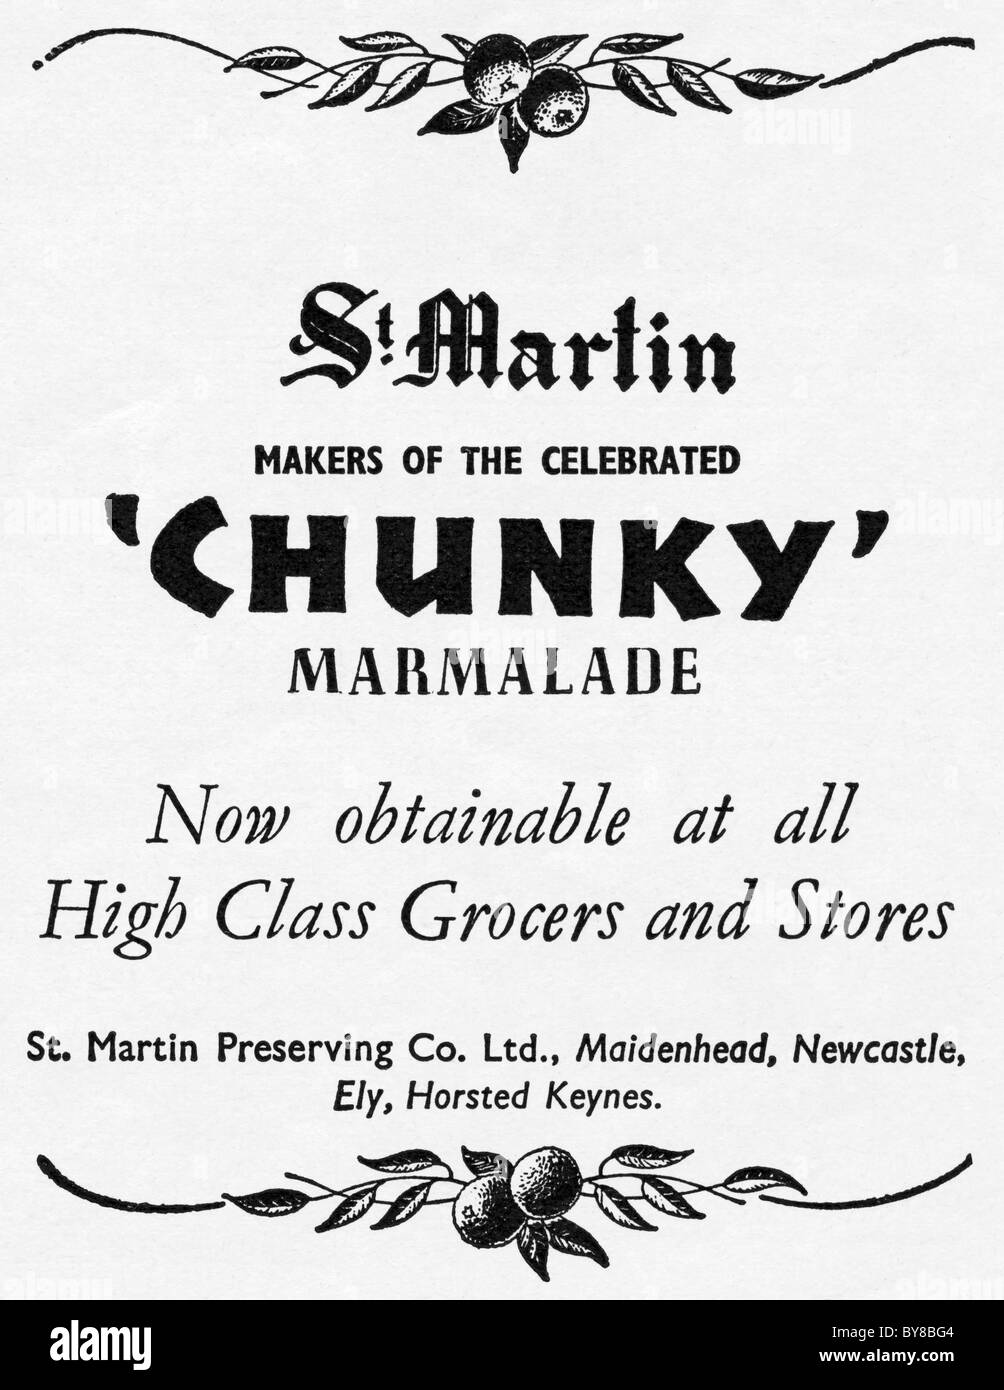 ST MARTIN klobige Marmelade Anzeige in Frauen Hauswirtschaft Magazin der 1940er Jahre Werbung Stockfoto